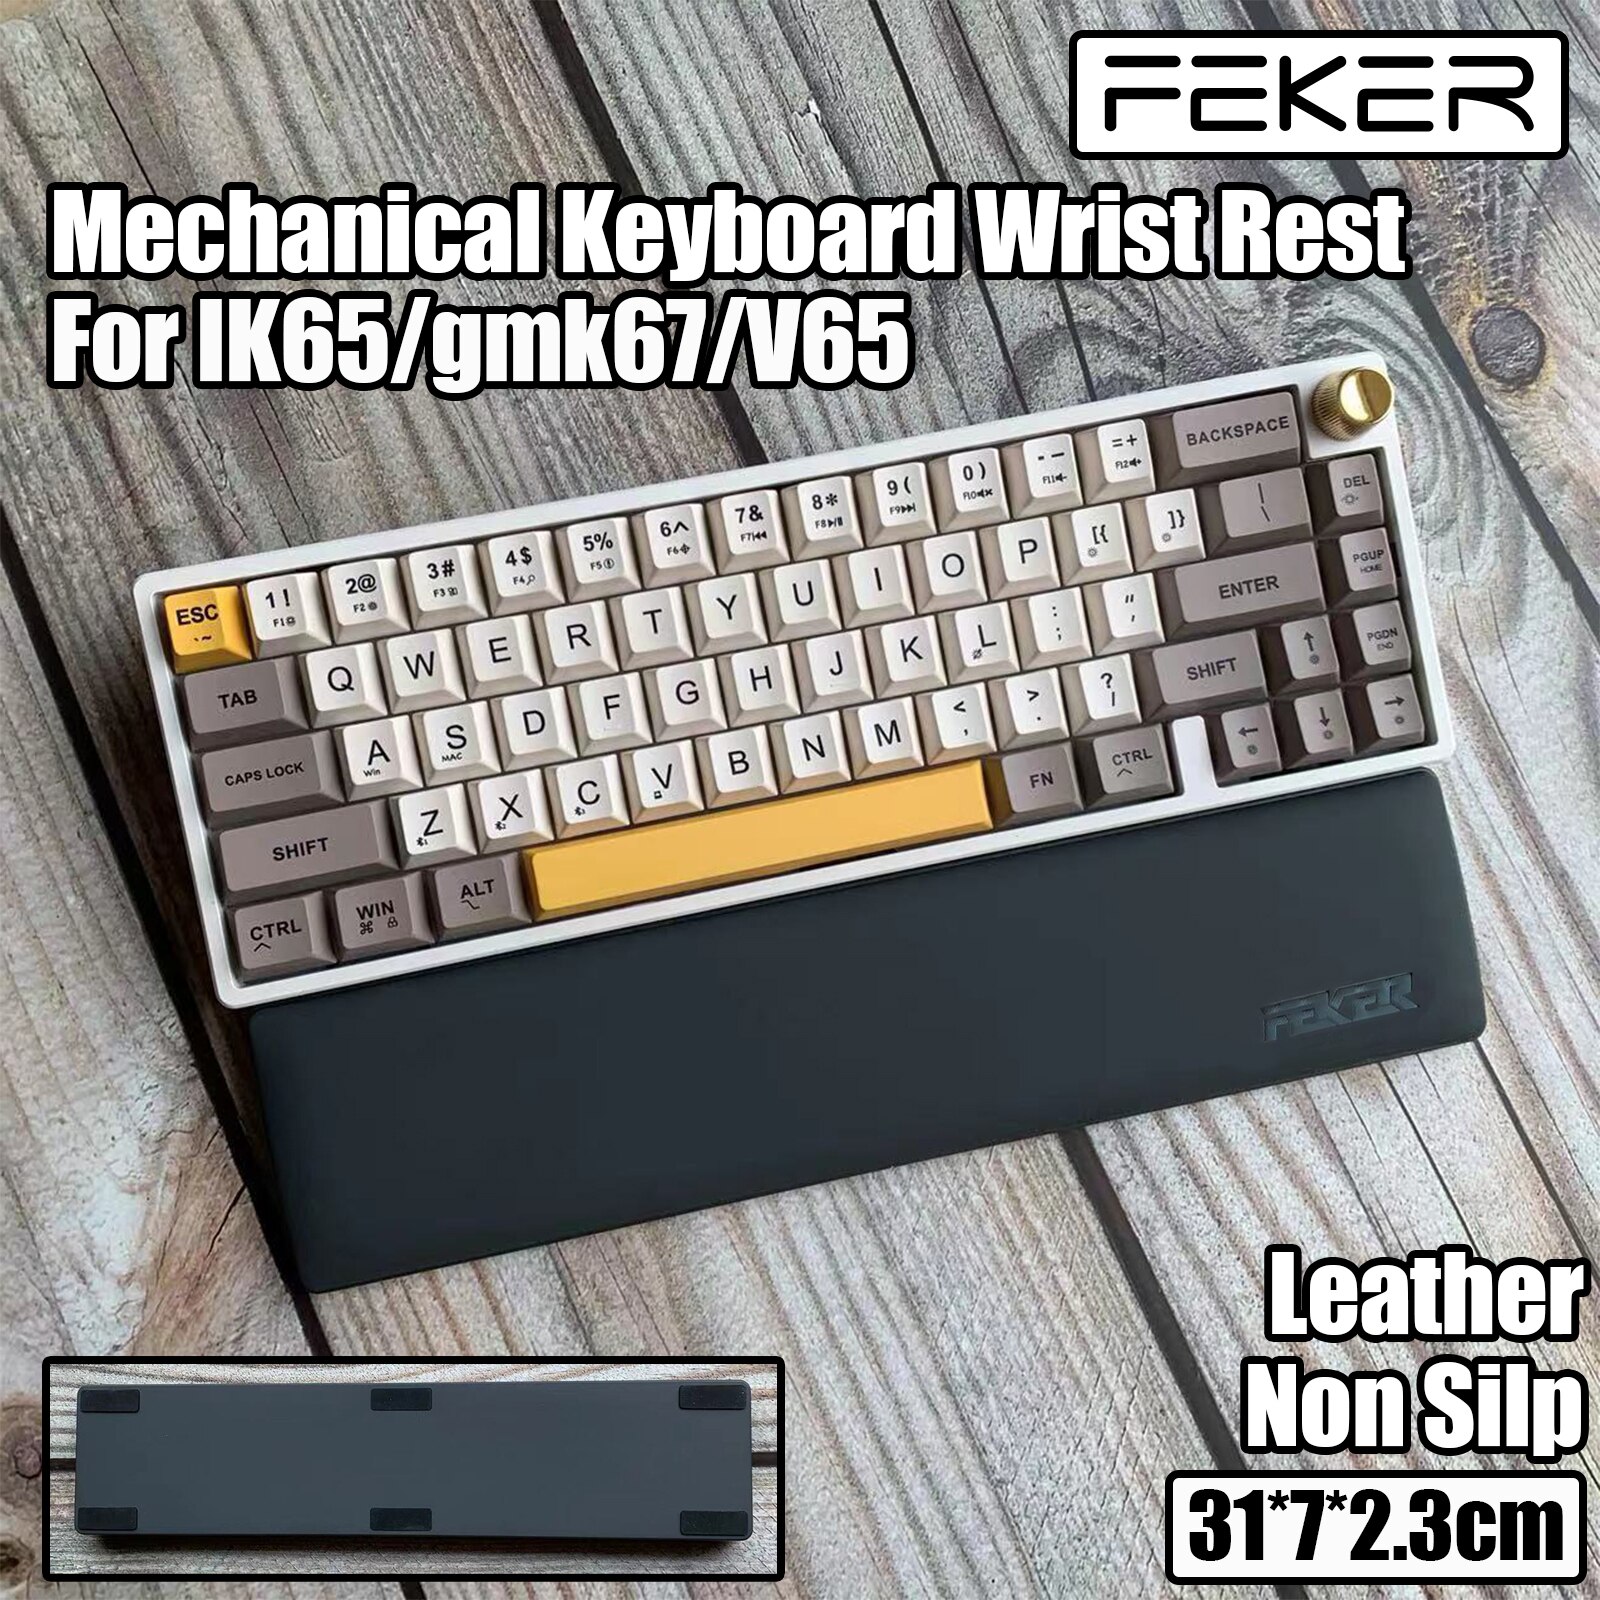 KeysLand FEKER Wrist Rest For 60% 65% Mechanical Keyboard IK65